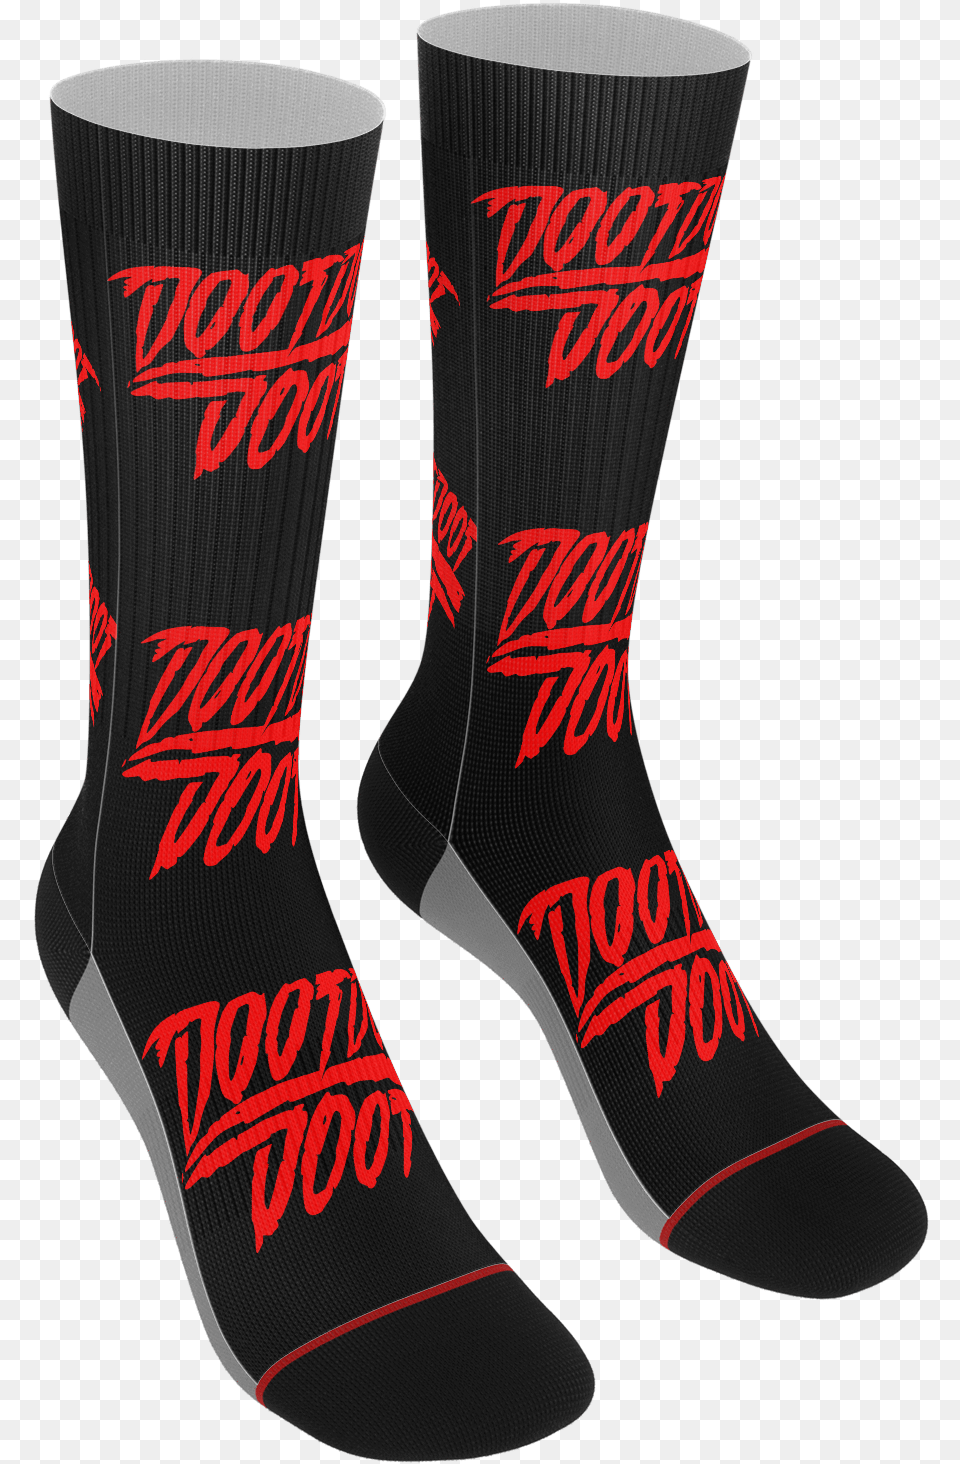 Doot Doot Doot Socks Download Sock, Clothing, Hosiery, Footwear, Shoe Free Transparent Png